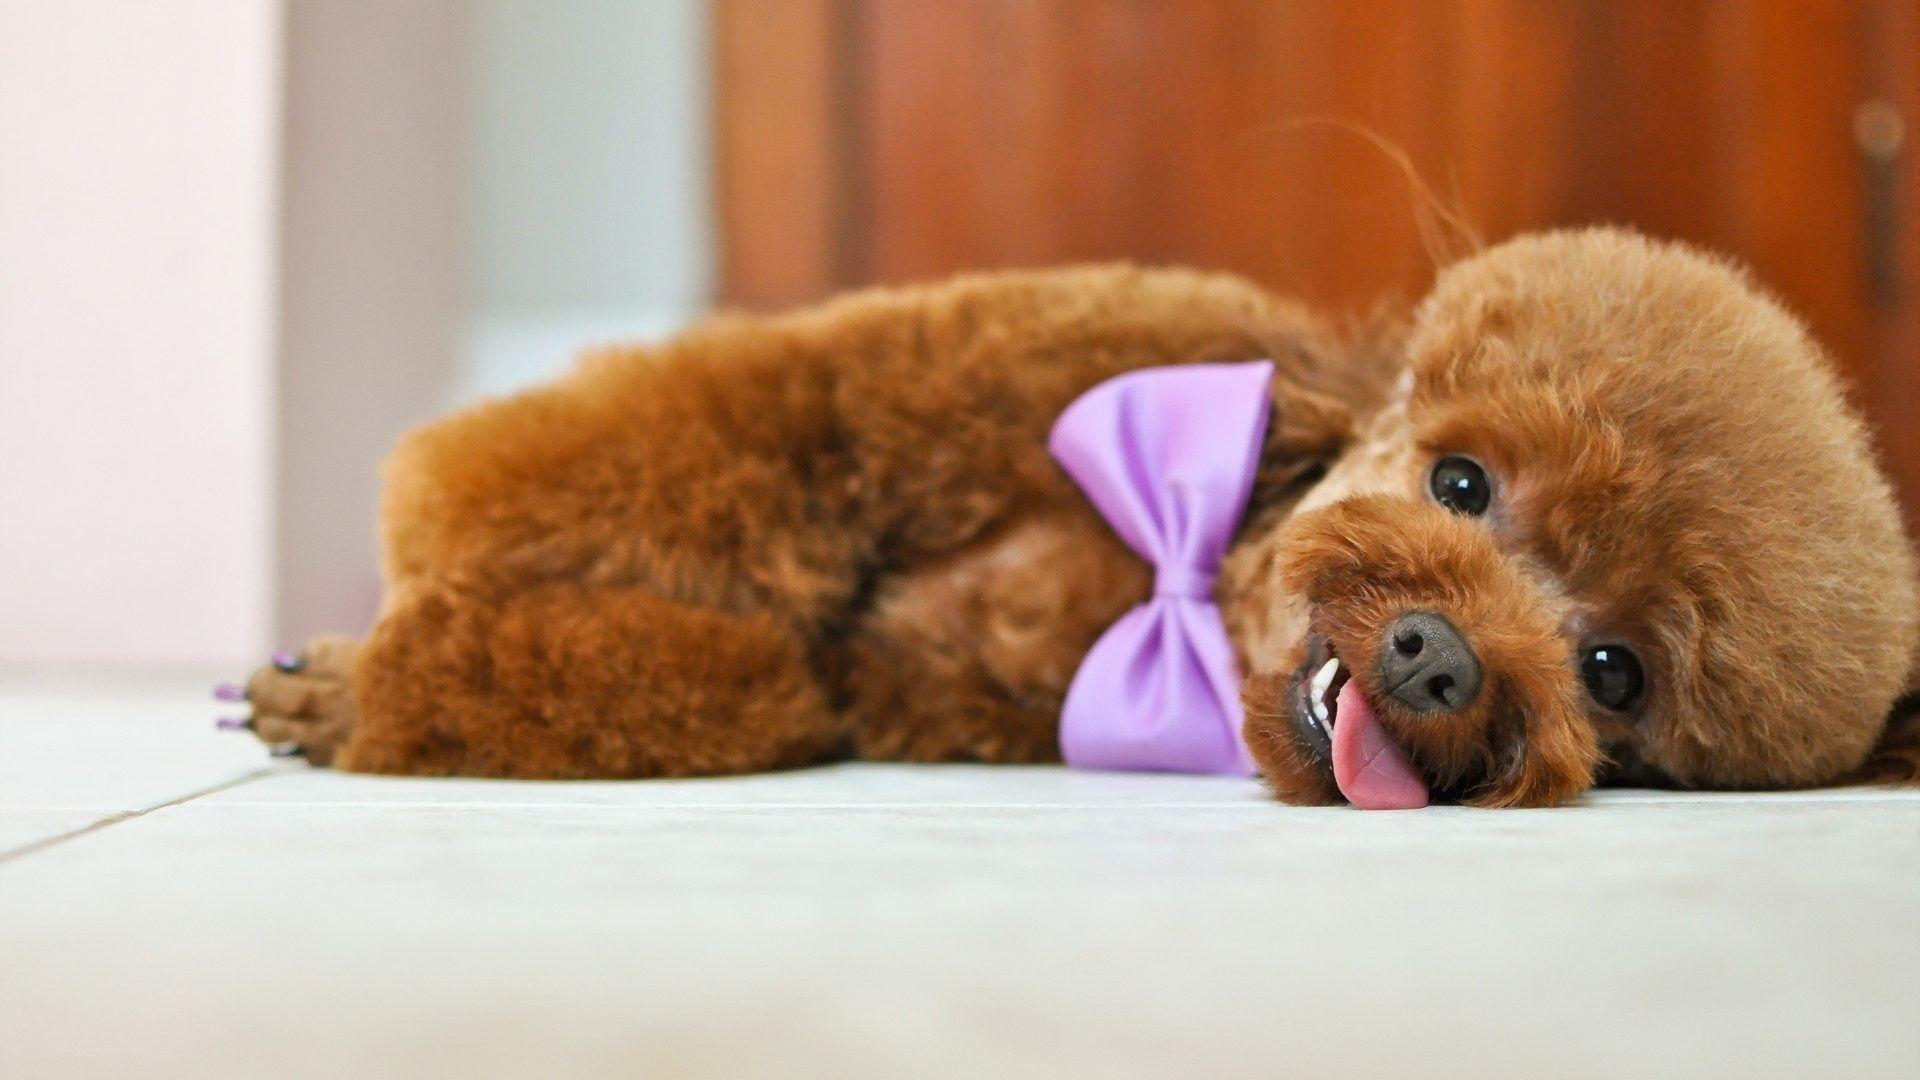 Poodle Tag wallpaper: Poodle Animal Dog Canine Beagle Background